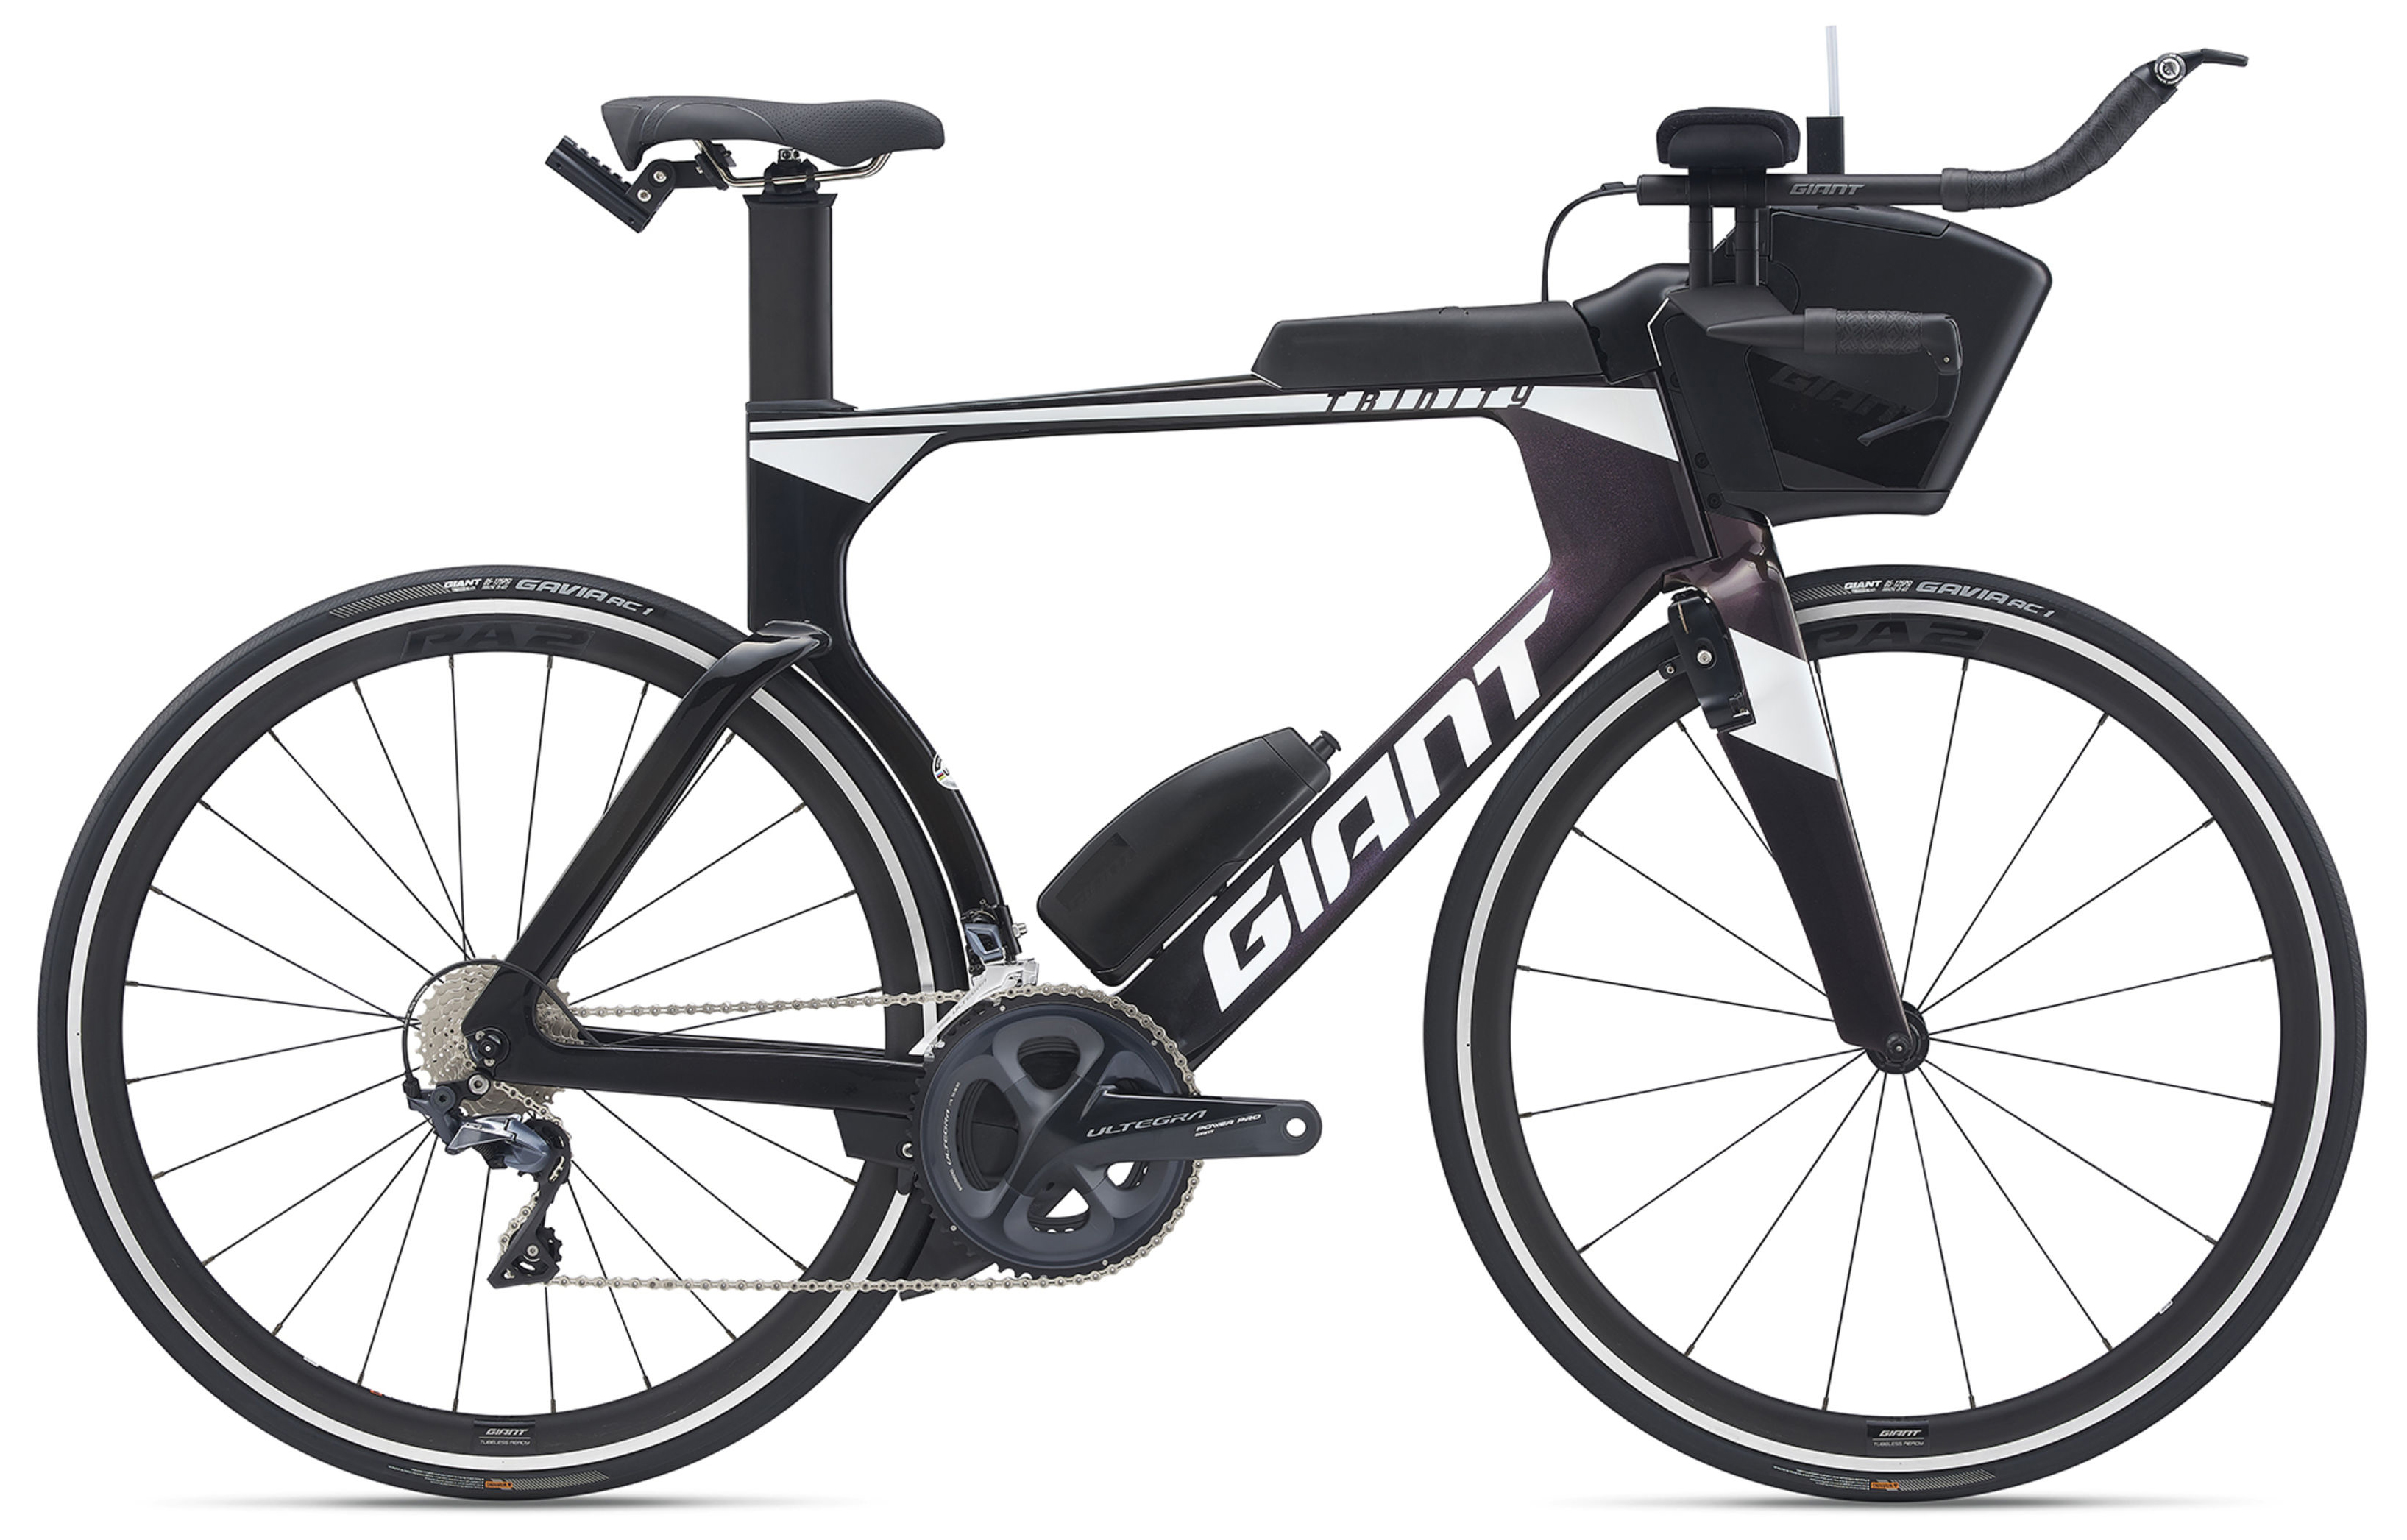  Велосипед Giant Trinity Advanced Pro 2 (2021) 2021